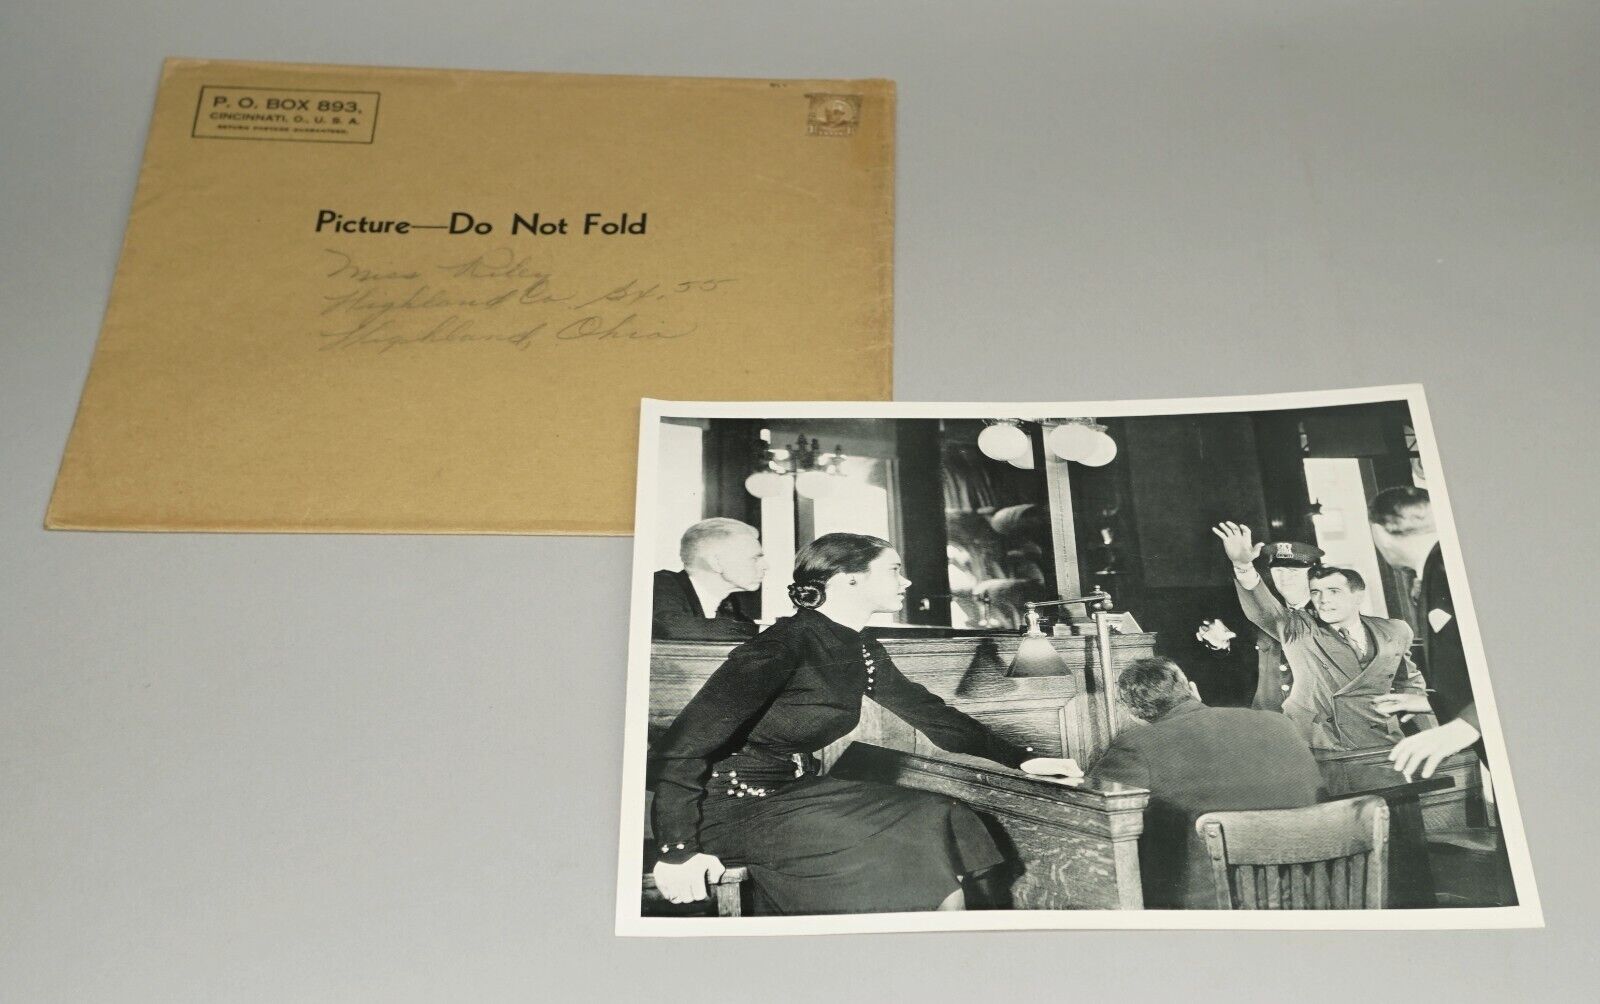 CIRCA 1930S - 1940S RADIO SHOW PREMIUM PHOTO IN ORIGINAL MAILING ENVELOPE